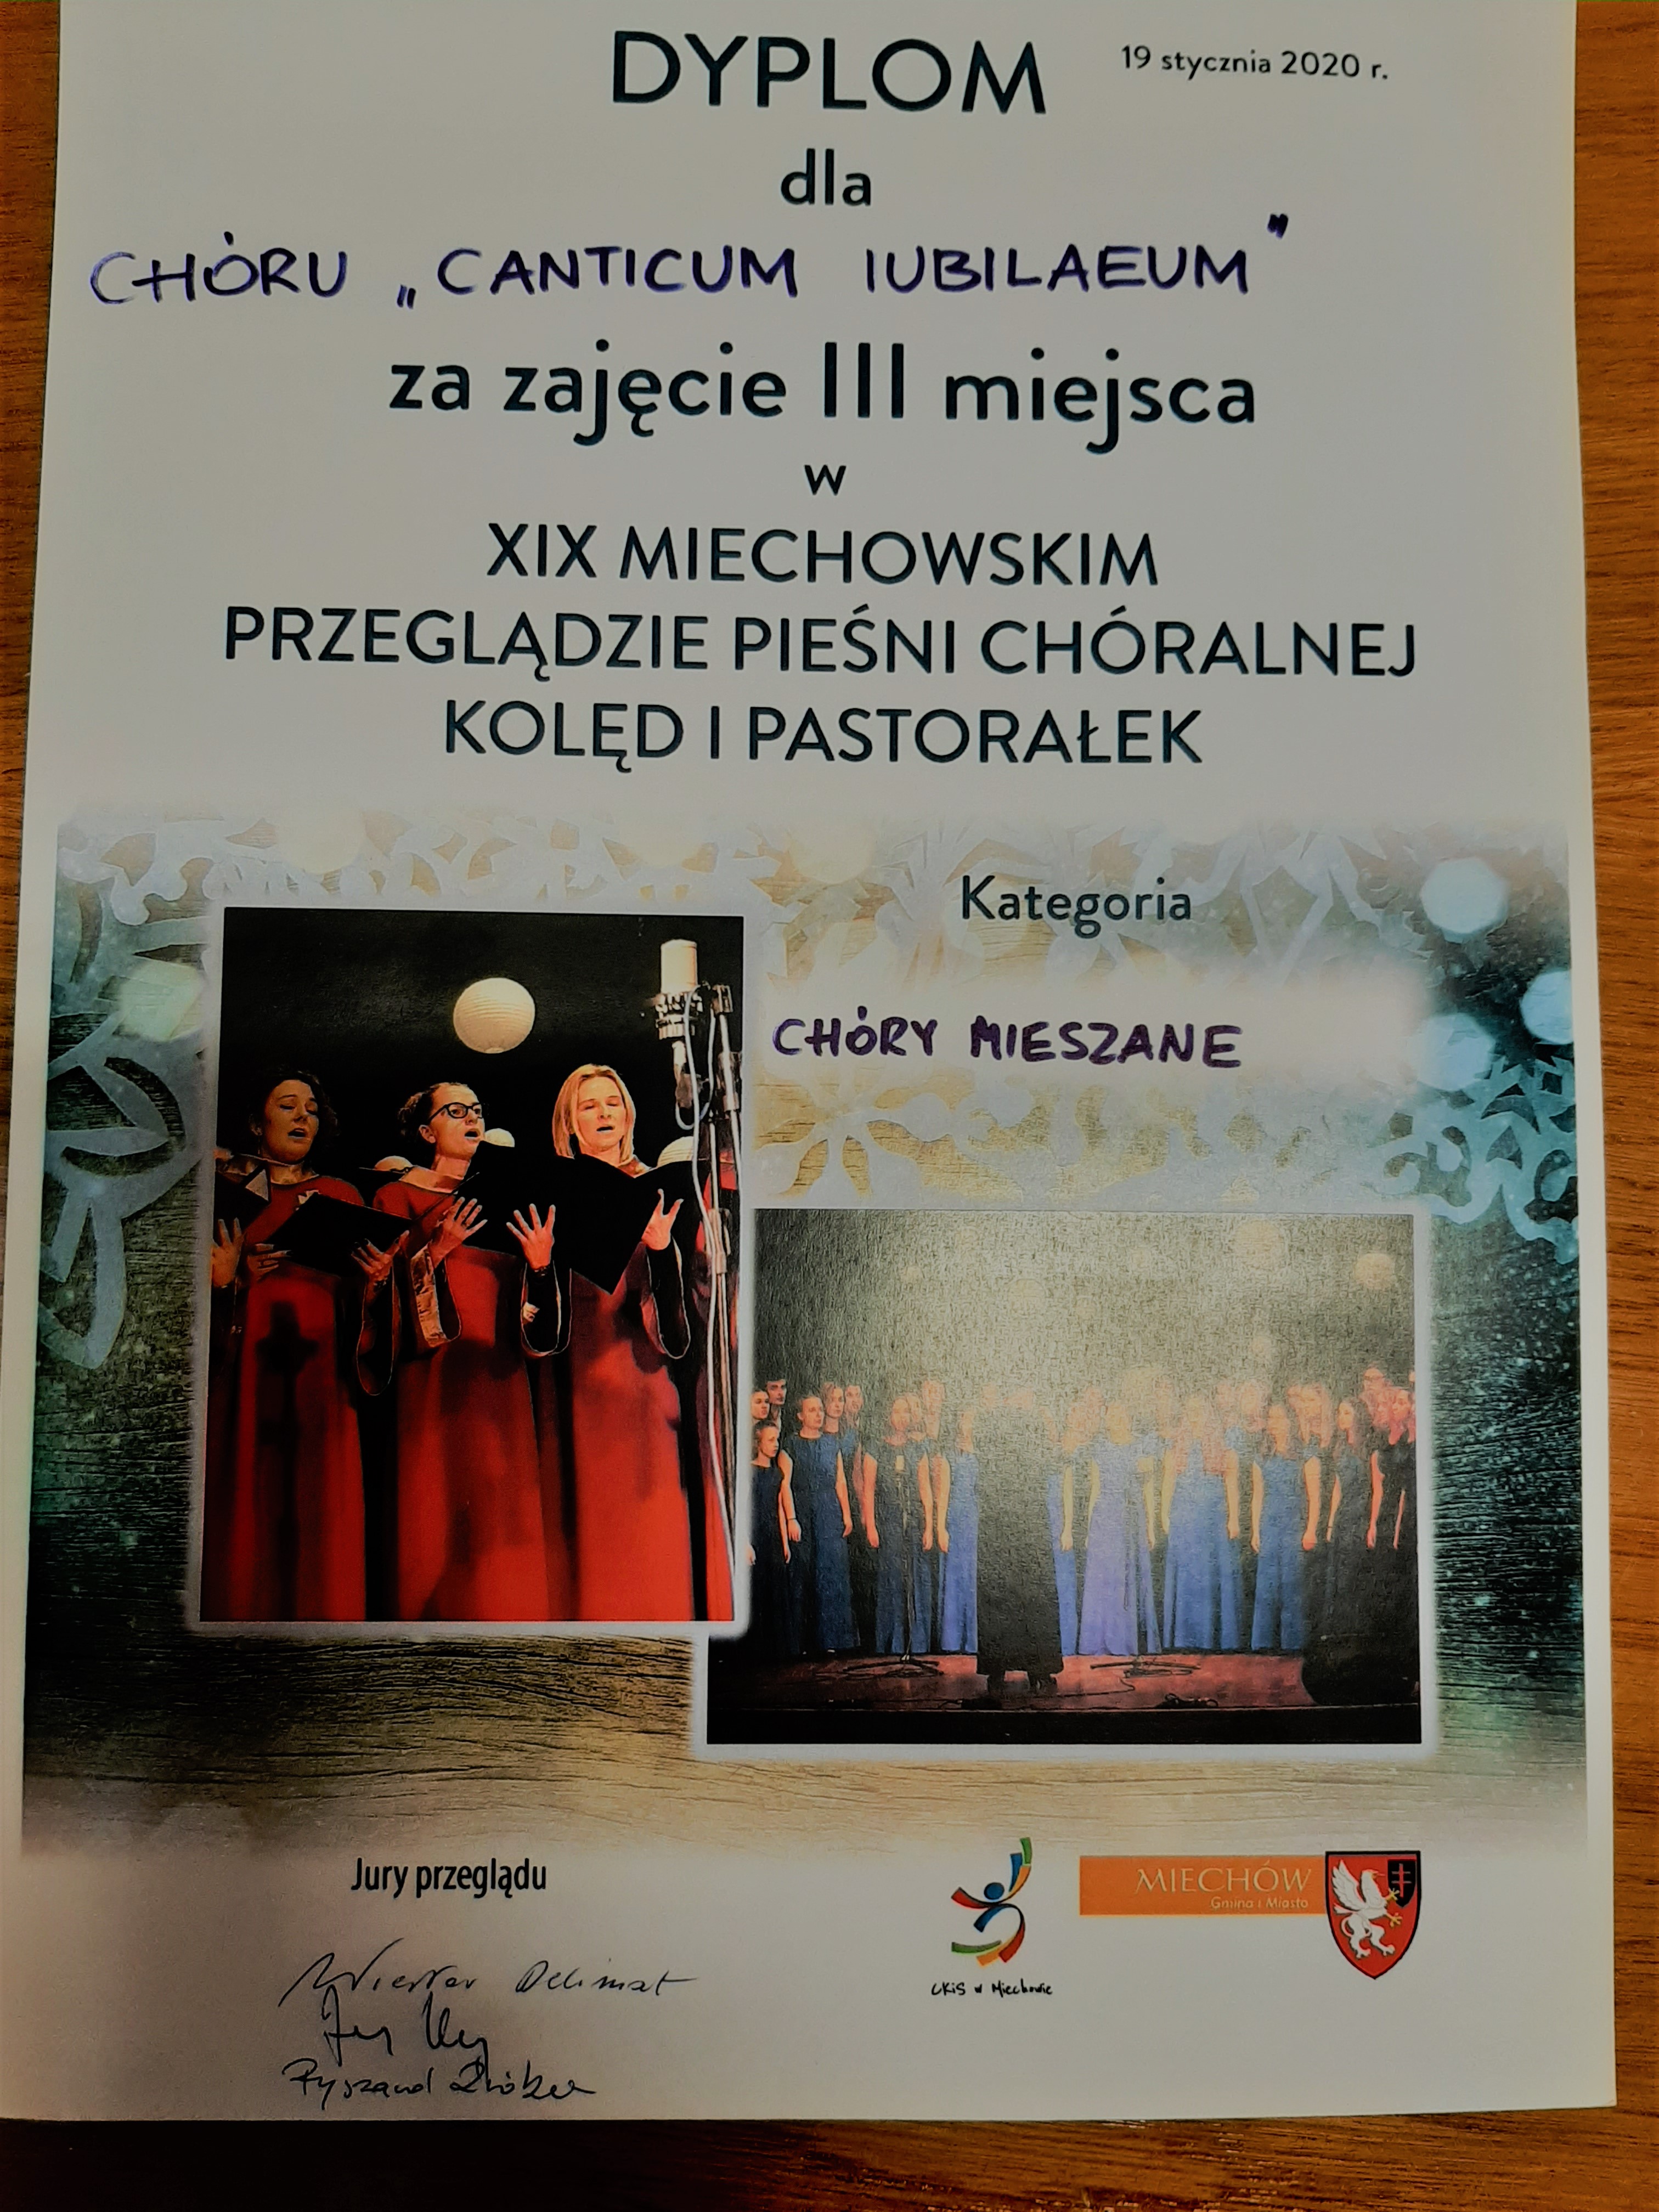 Dyplom dla CANTICUM IUBILAEUM za zajęcie III miejsca w XIX Miechowskim Przeglądzie w kategorii chóry mieszane